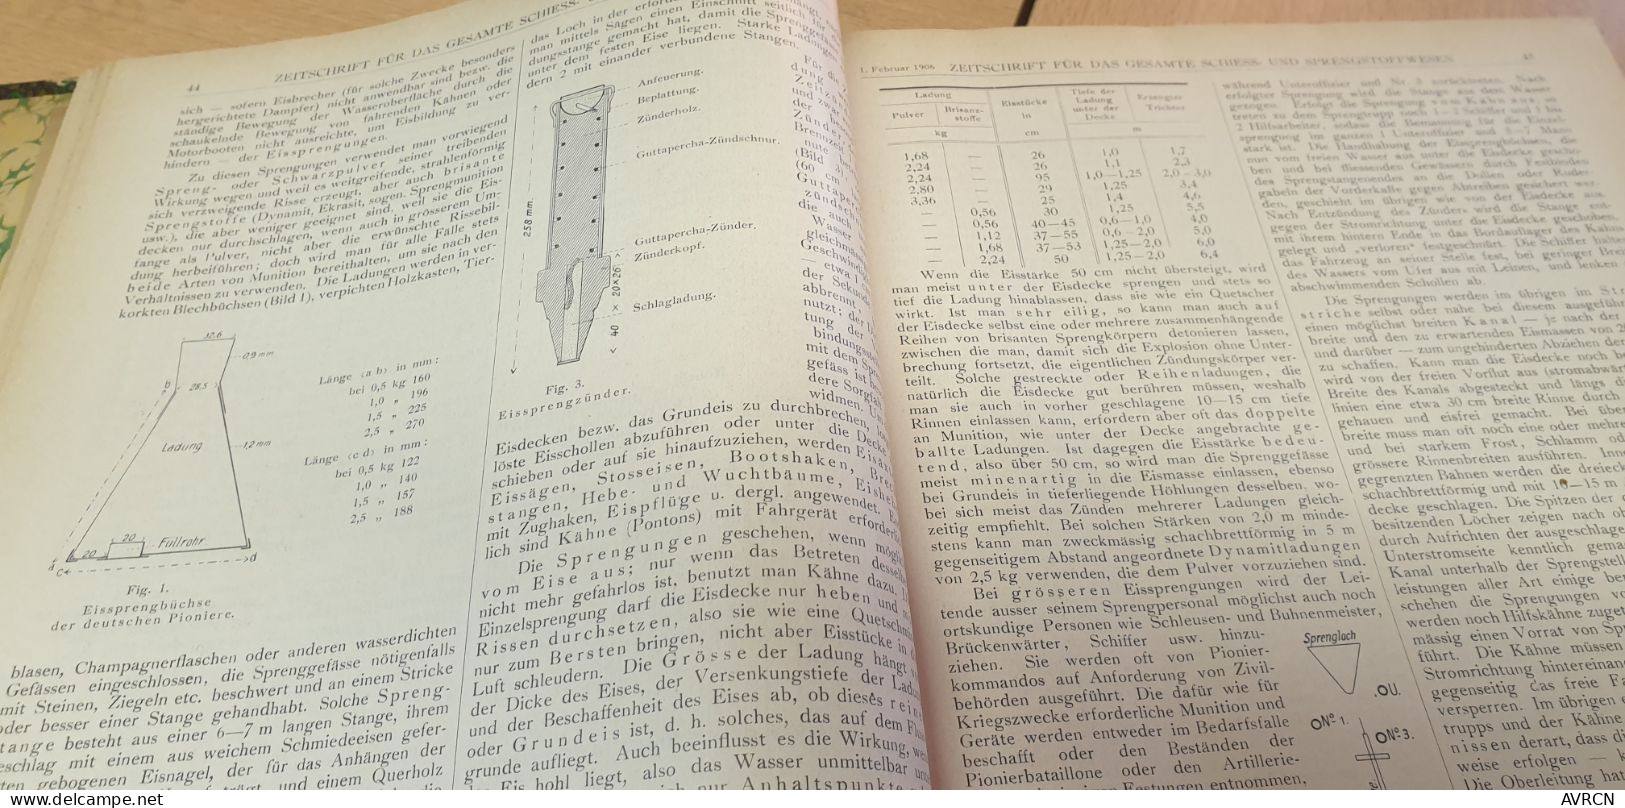 zeitschrift für das gesamte schiess- und sprengstoffwesen Dr Richard Escales 1906